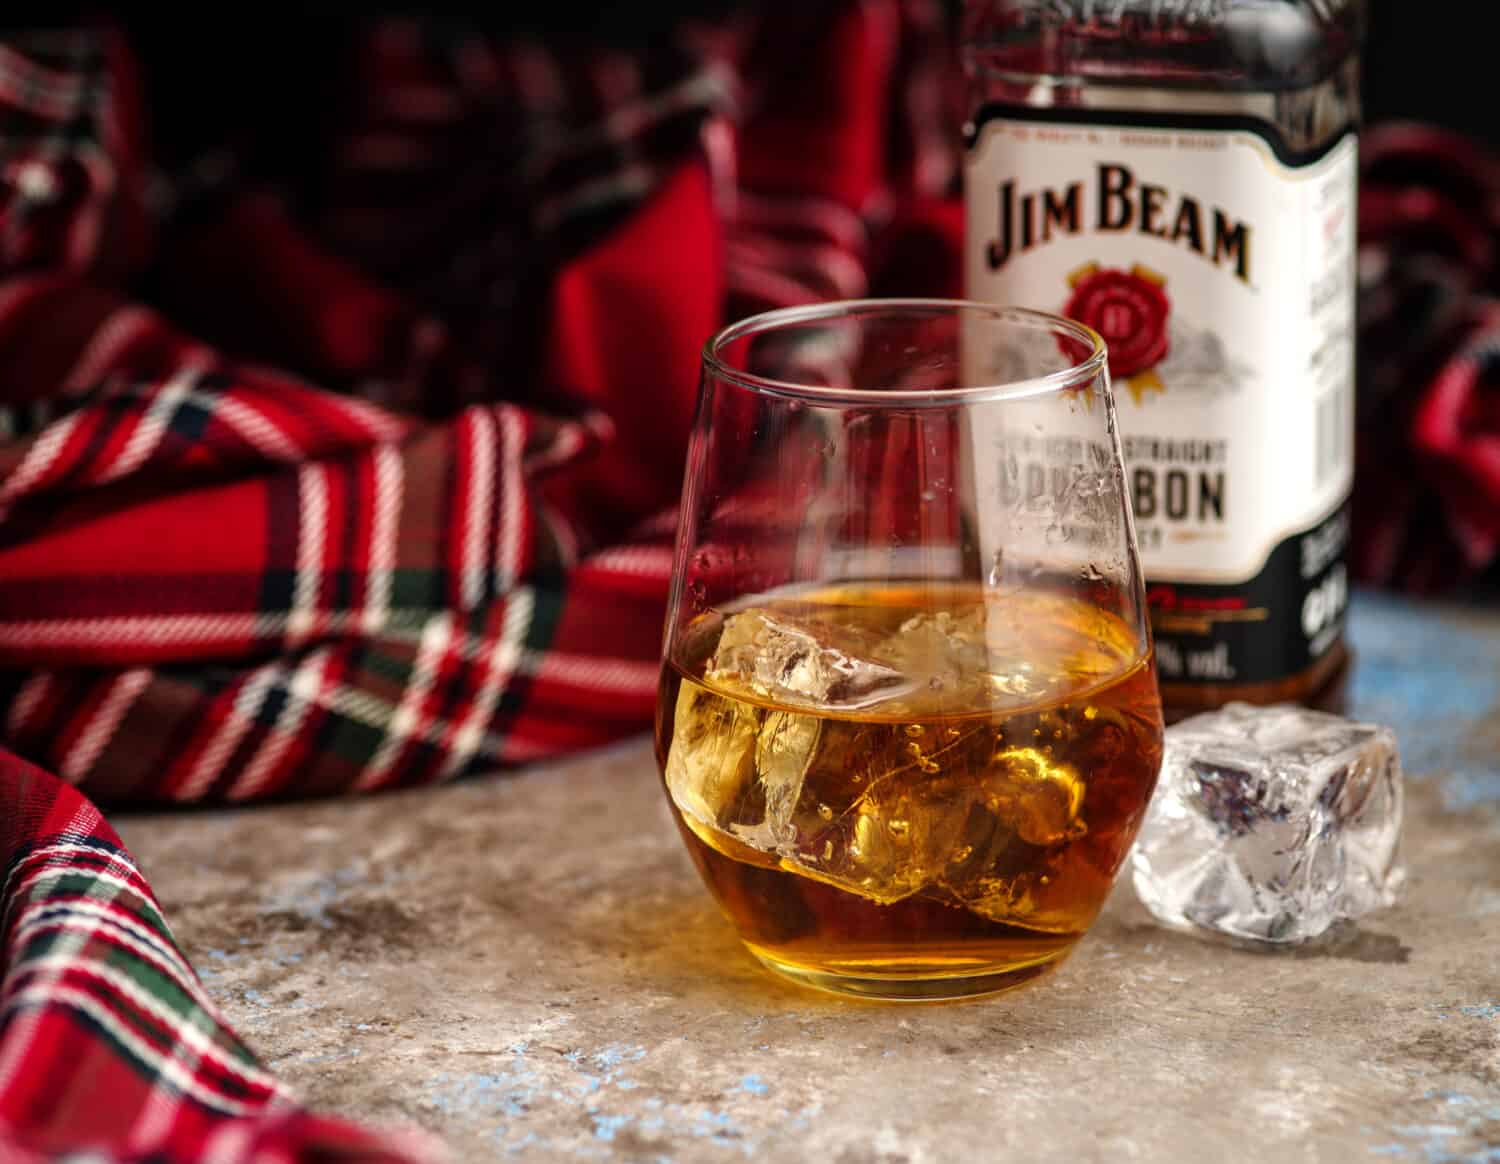 MINSK, BIELORUSSIA - 31 OTTOBRE 2018: Bottiglia e bicchiere Jim Beam è uno dei marchi di bourbon più venduti al mondo, prodotto da Beam Inc. a Clermont, Kentucky